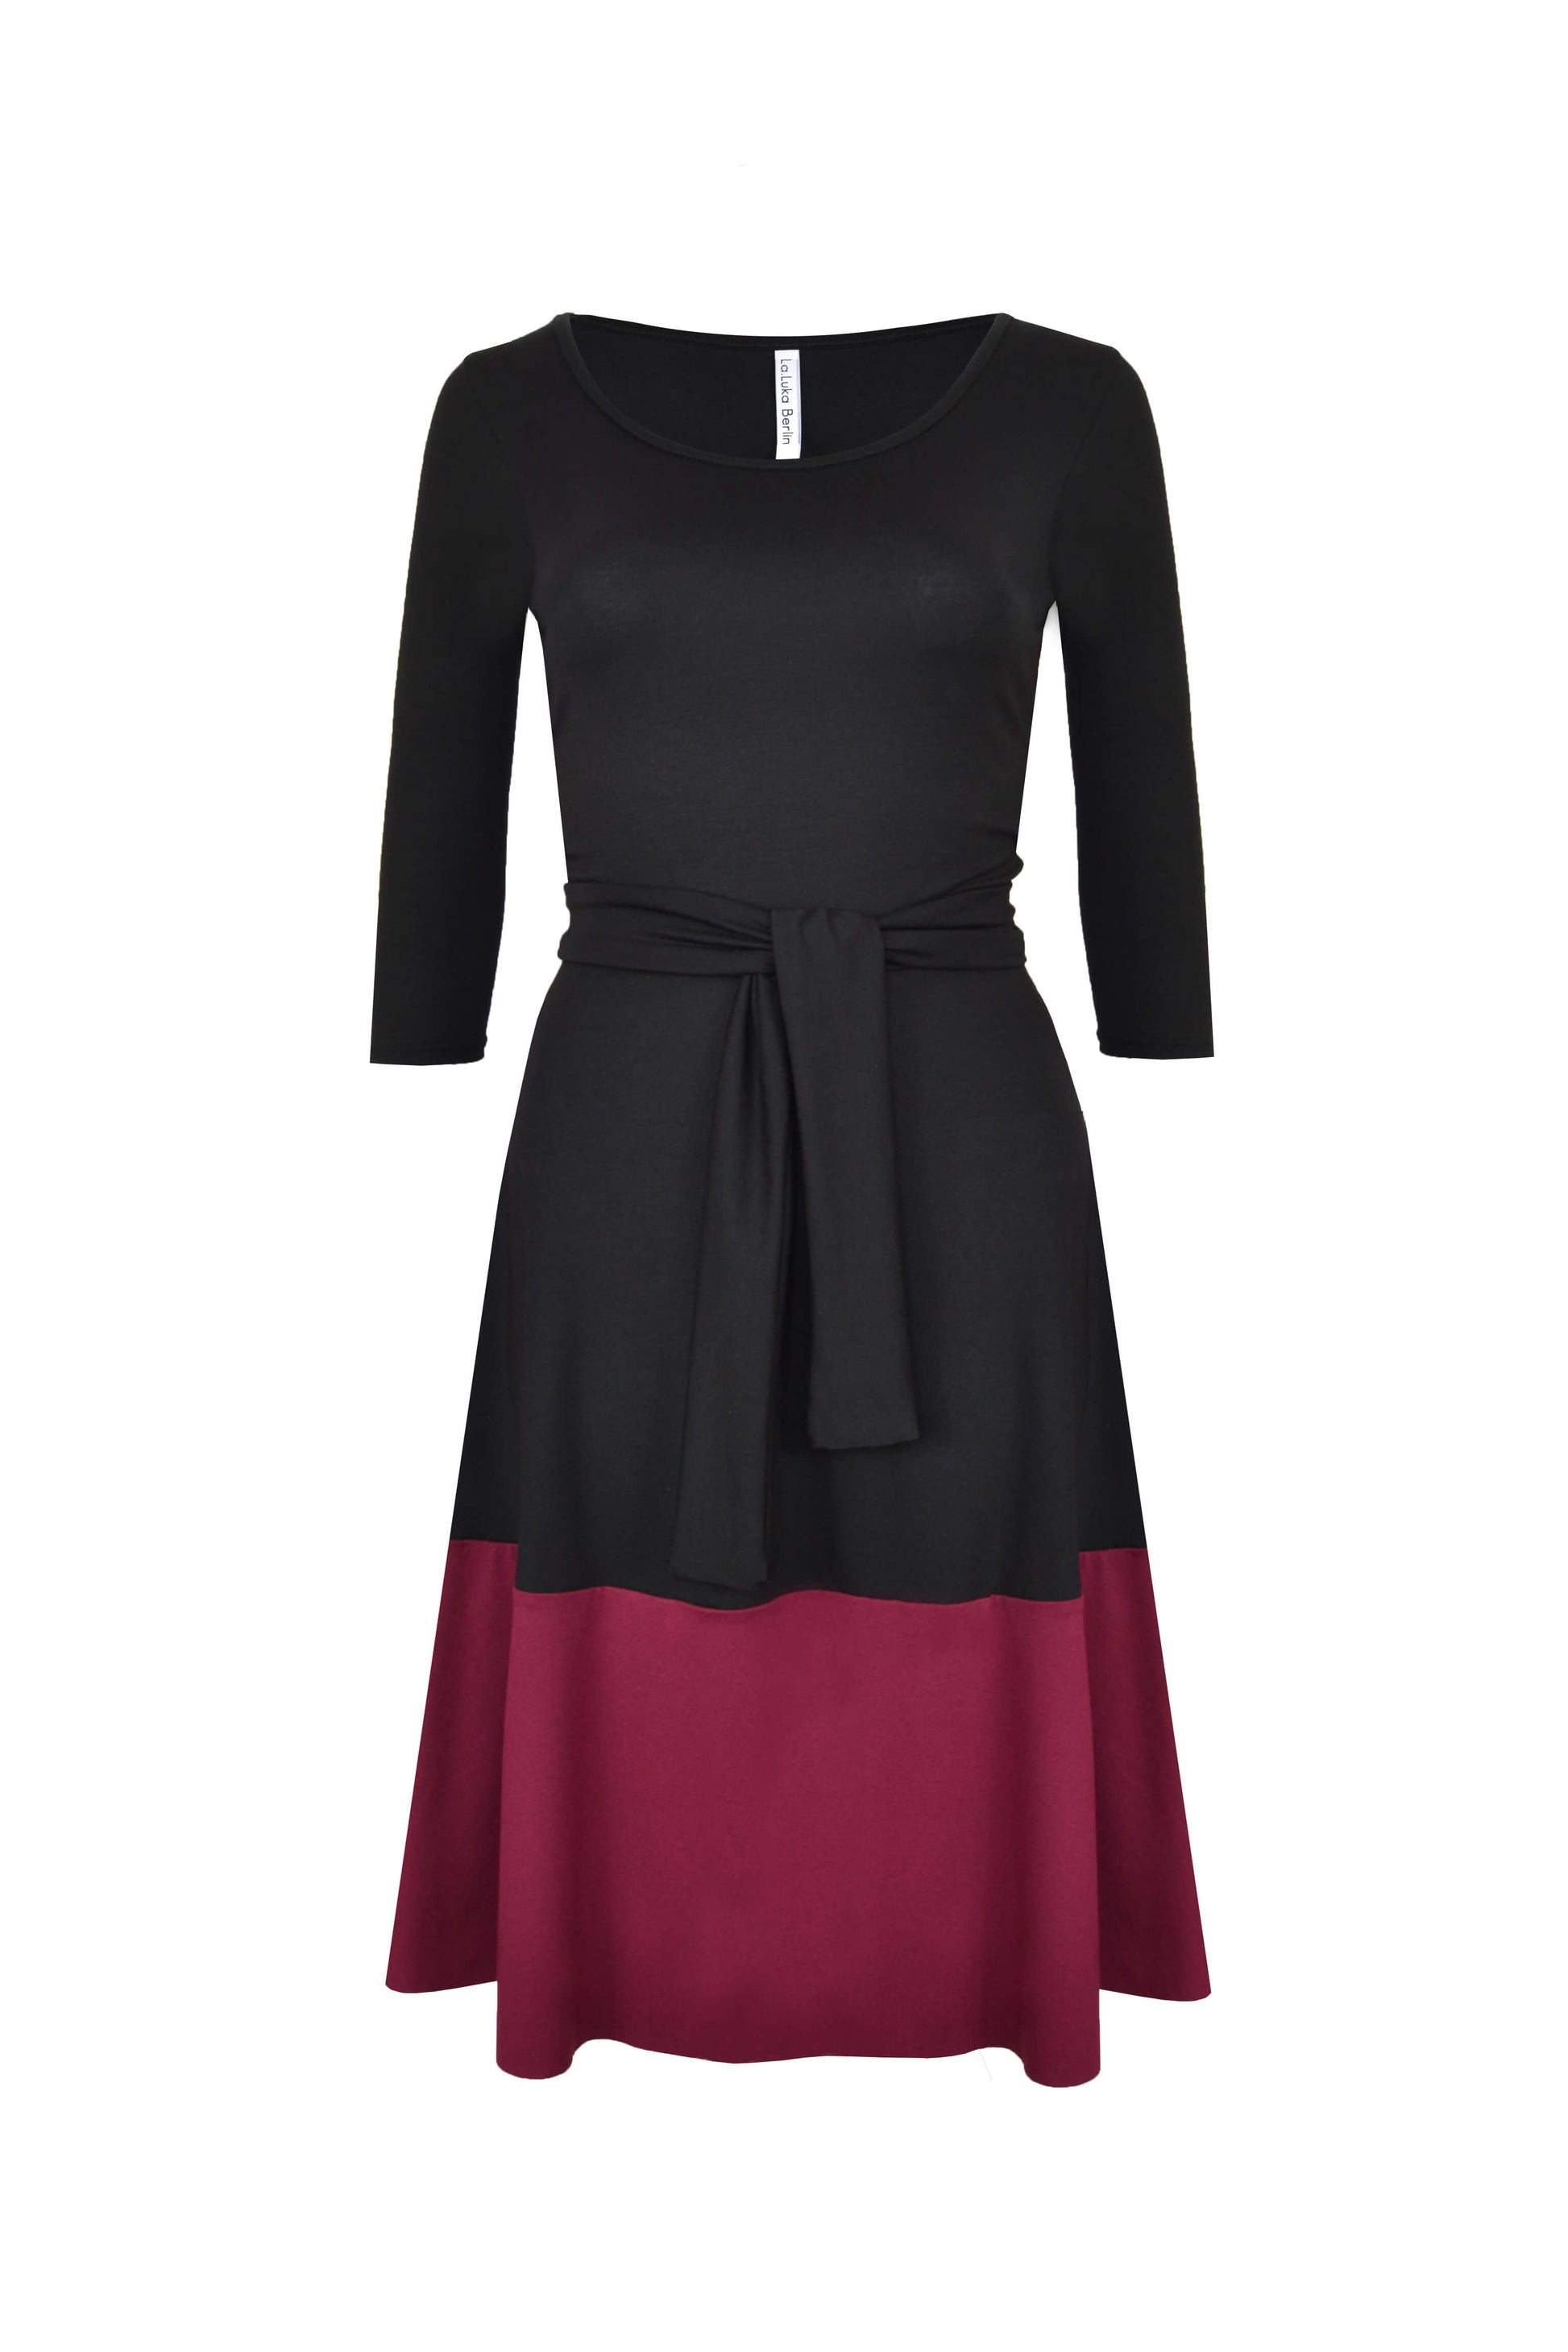 Elegantes, schwarzes Kleid aus Viskosejersey mit farblich abgesetzten Saum in bordeaux von LA.LUKA Berlin in der Vorderansicht.